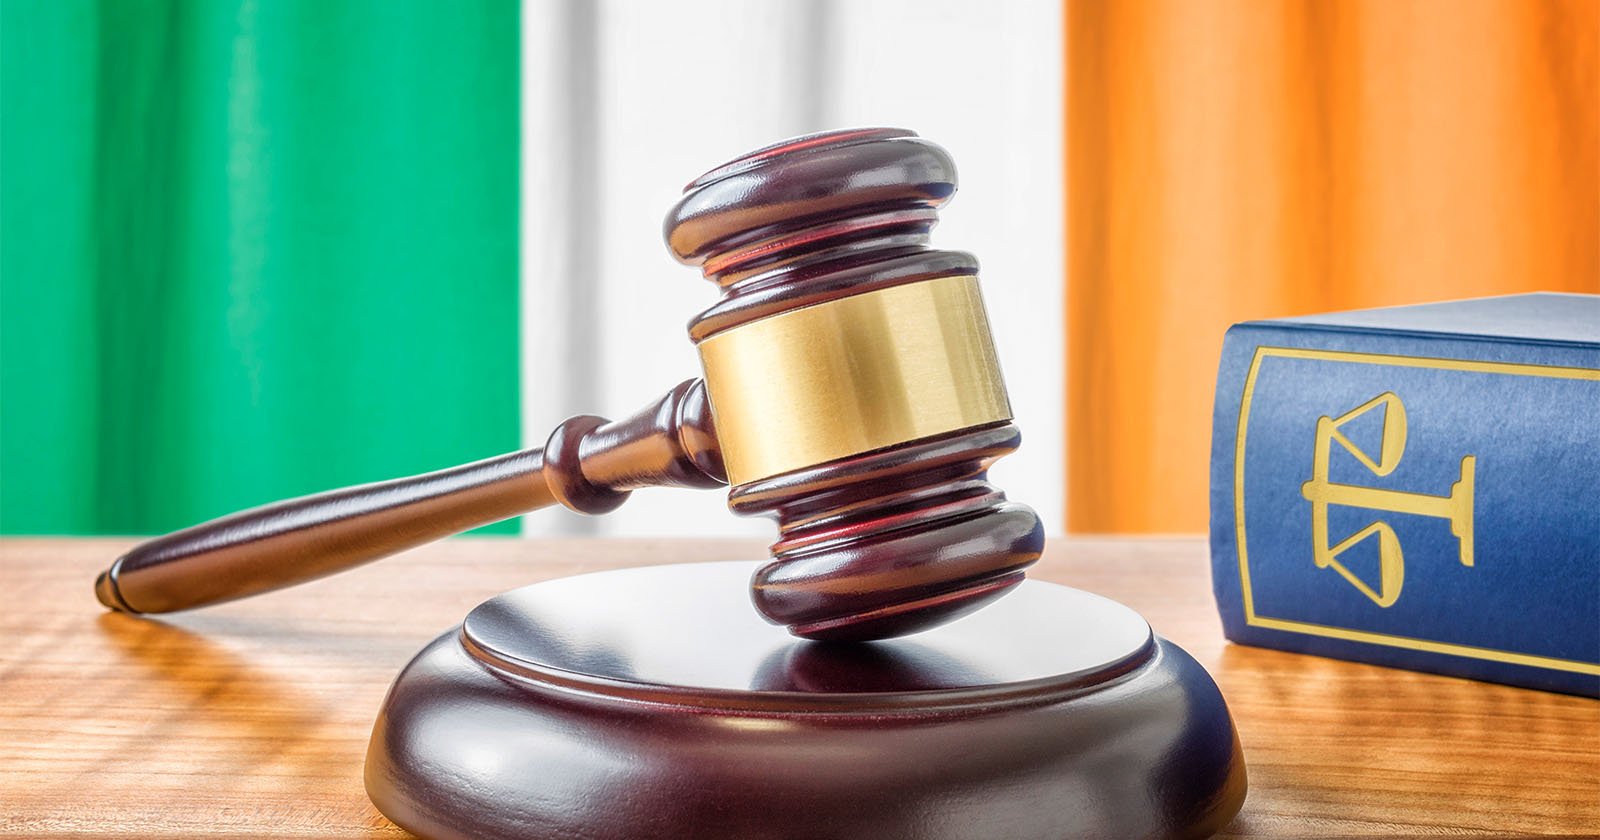  irish woman loses 825 000 injury lawsuit because 